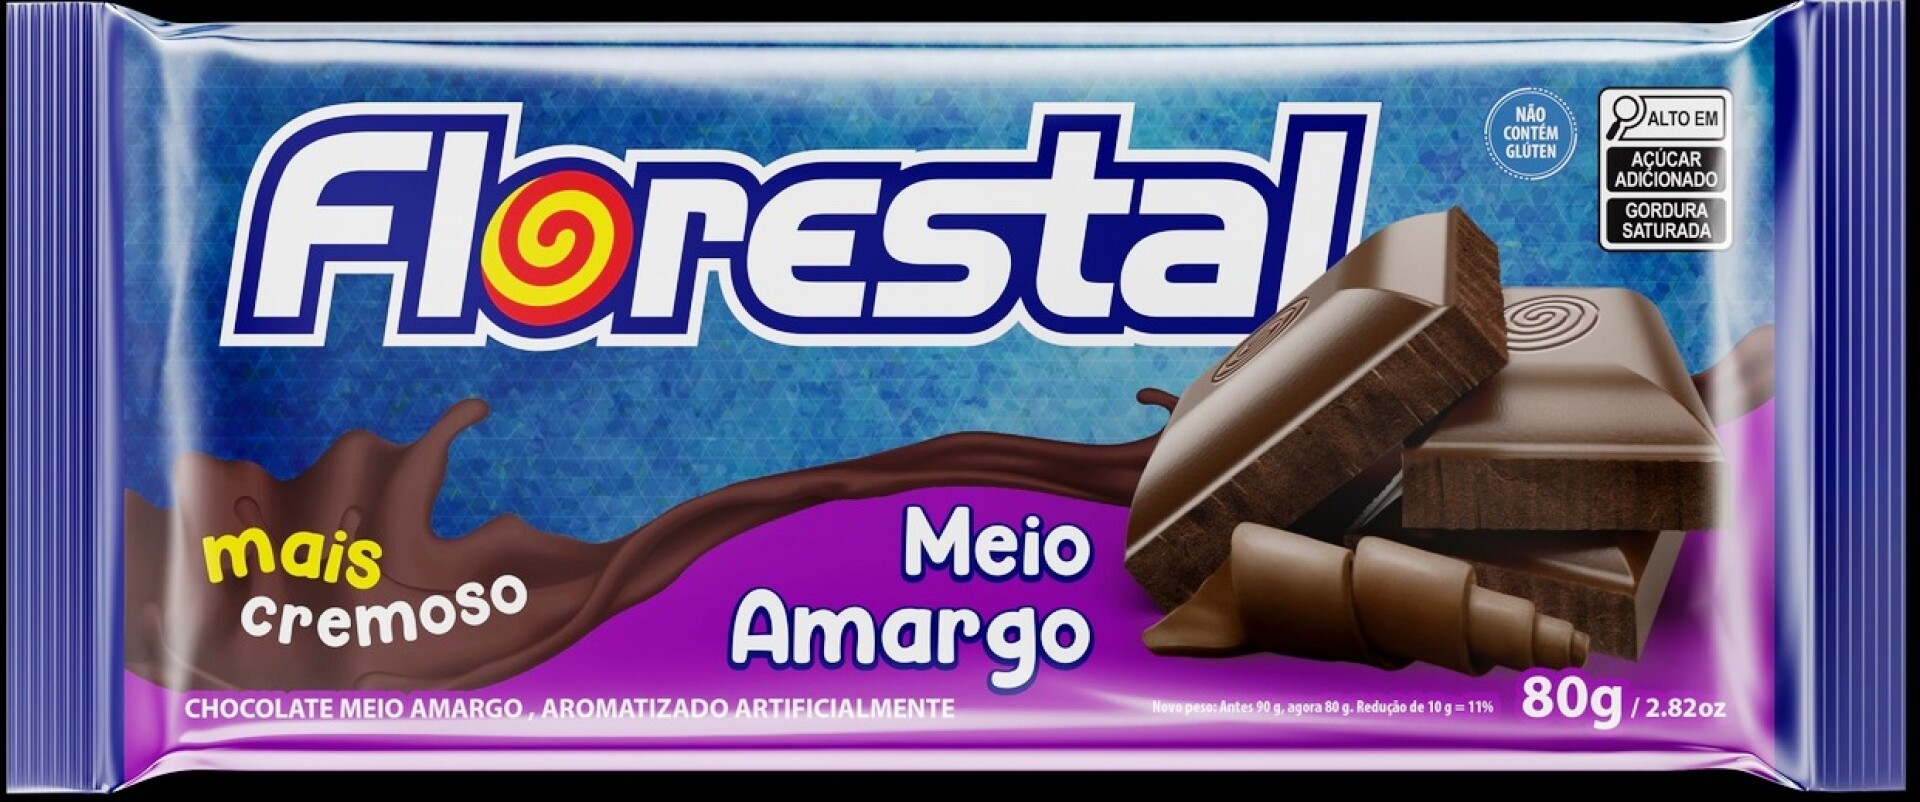 TABLETA CHOCOLATE FLORESTAL 90G AMARGO 